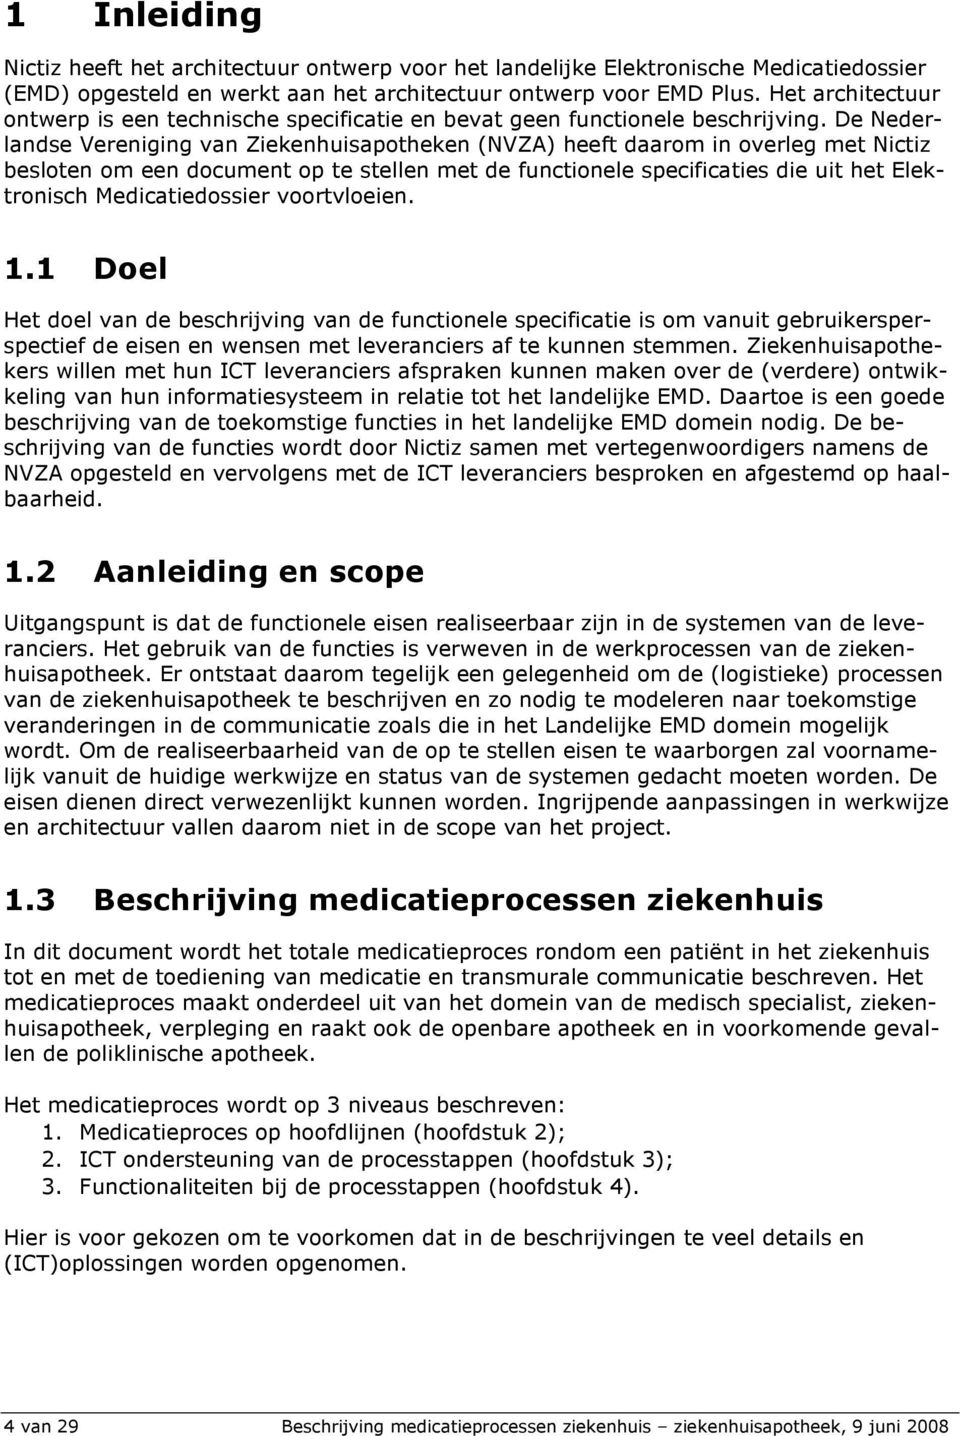 De Nederlandse Vereniging van Ziekenhuisapotheken (NVZA) heeft daarom in overleg met Nictiz besloten om een document op te stellen met de functionele specificaties die uit het Elektronisch